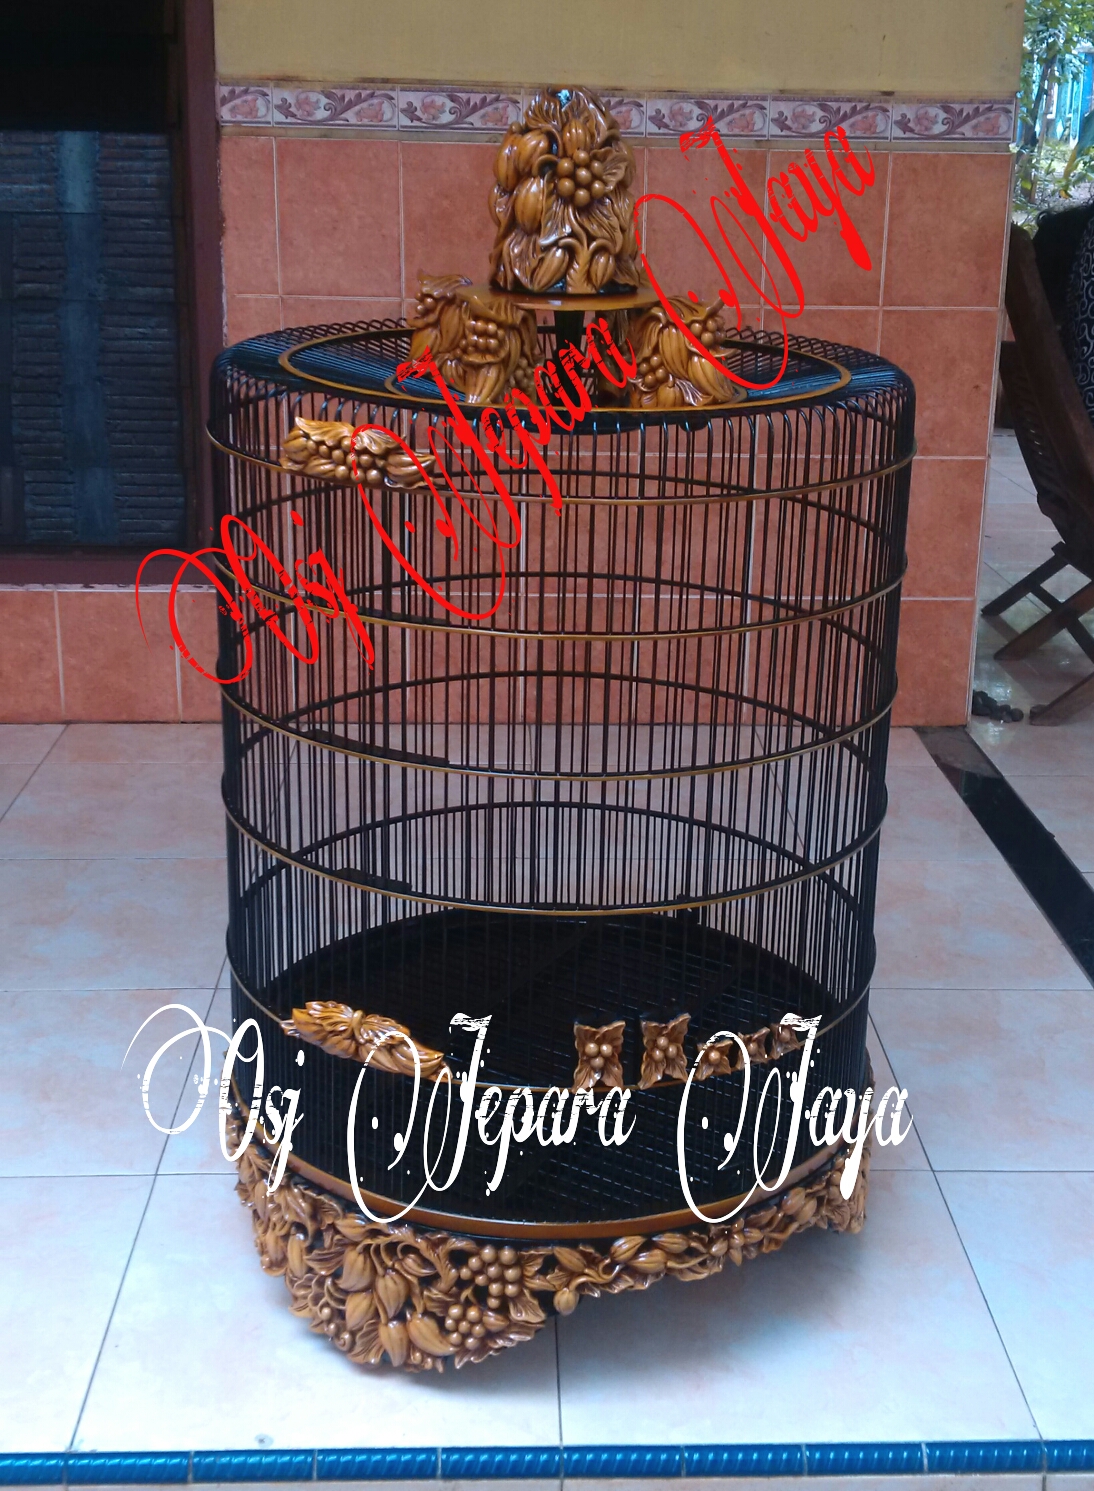 Sangkar Burung Osj Jepara Jaya / Bird Cage Osj Jaya : Bird 